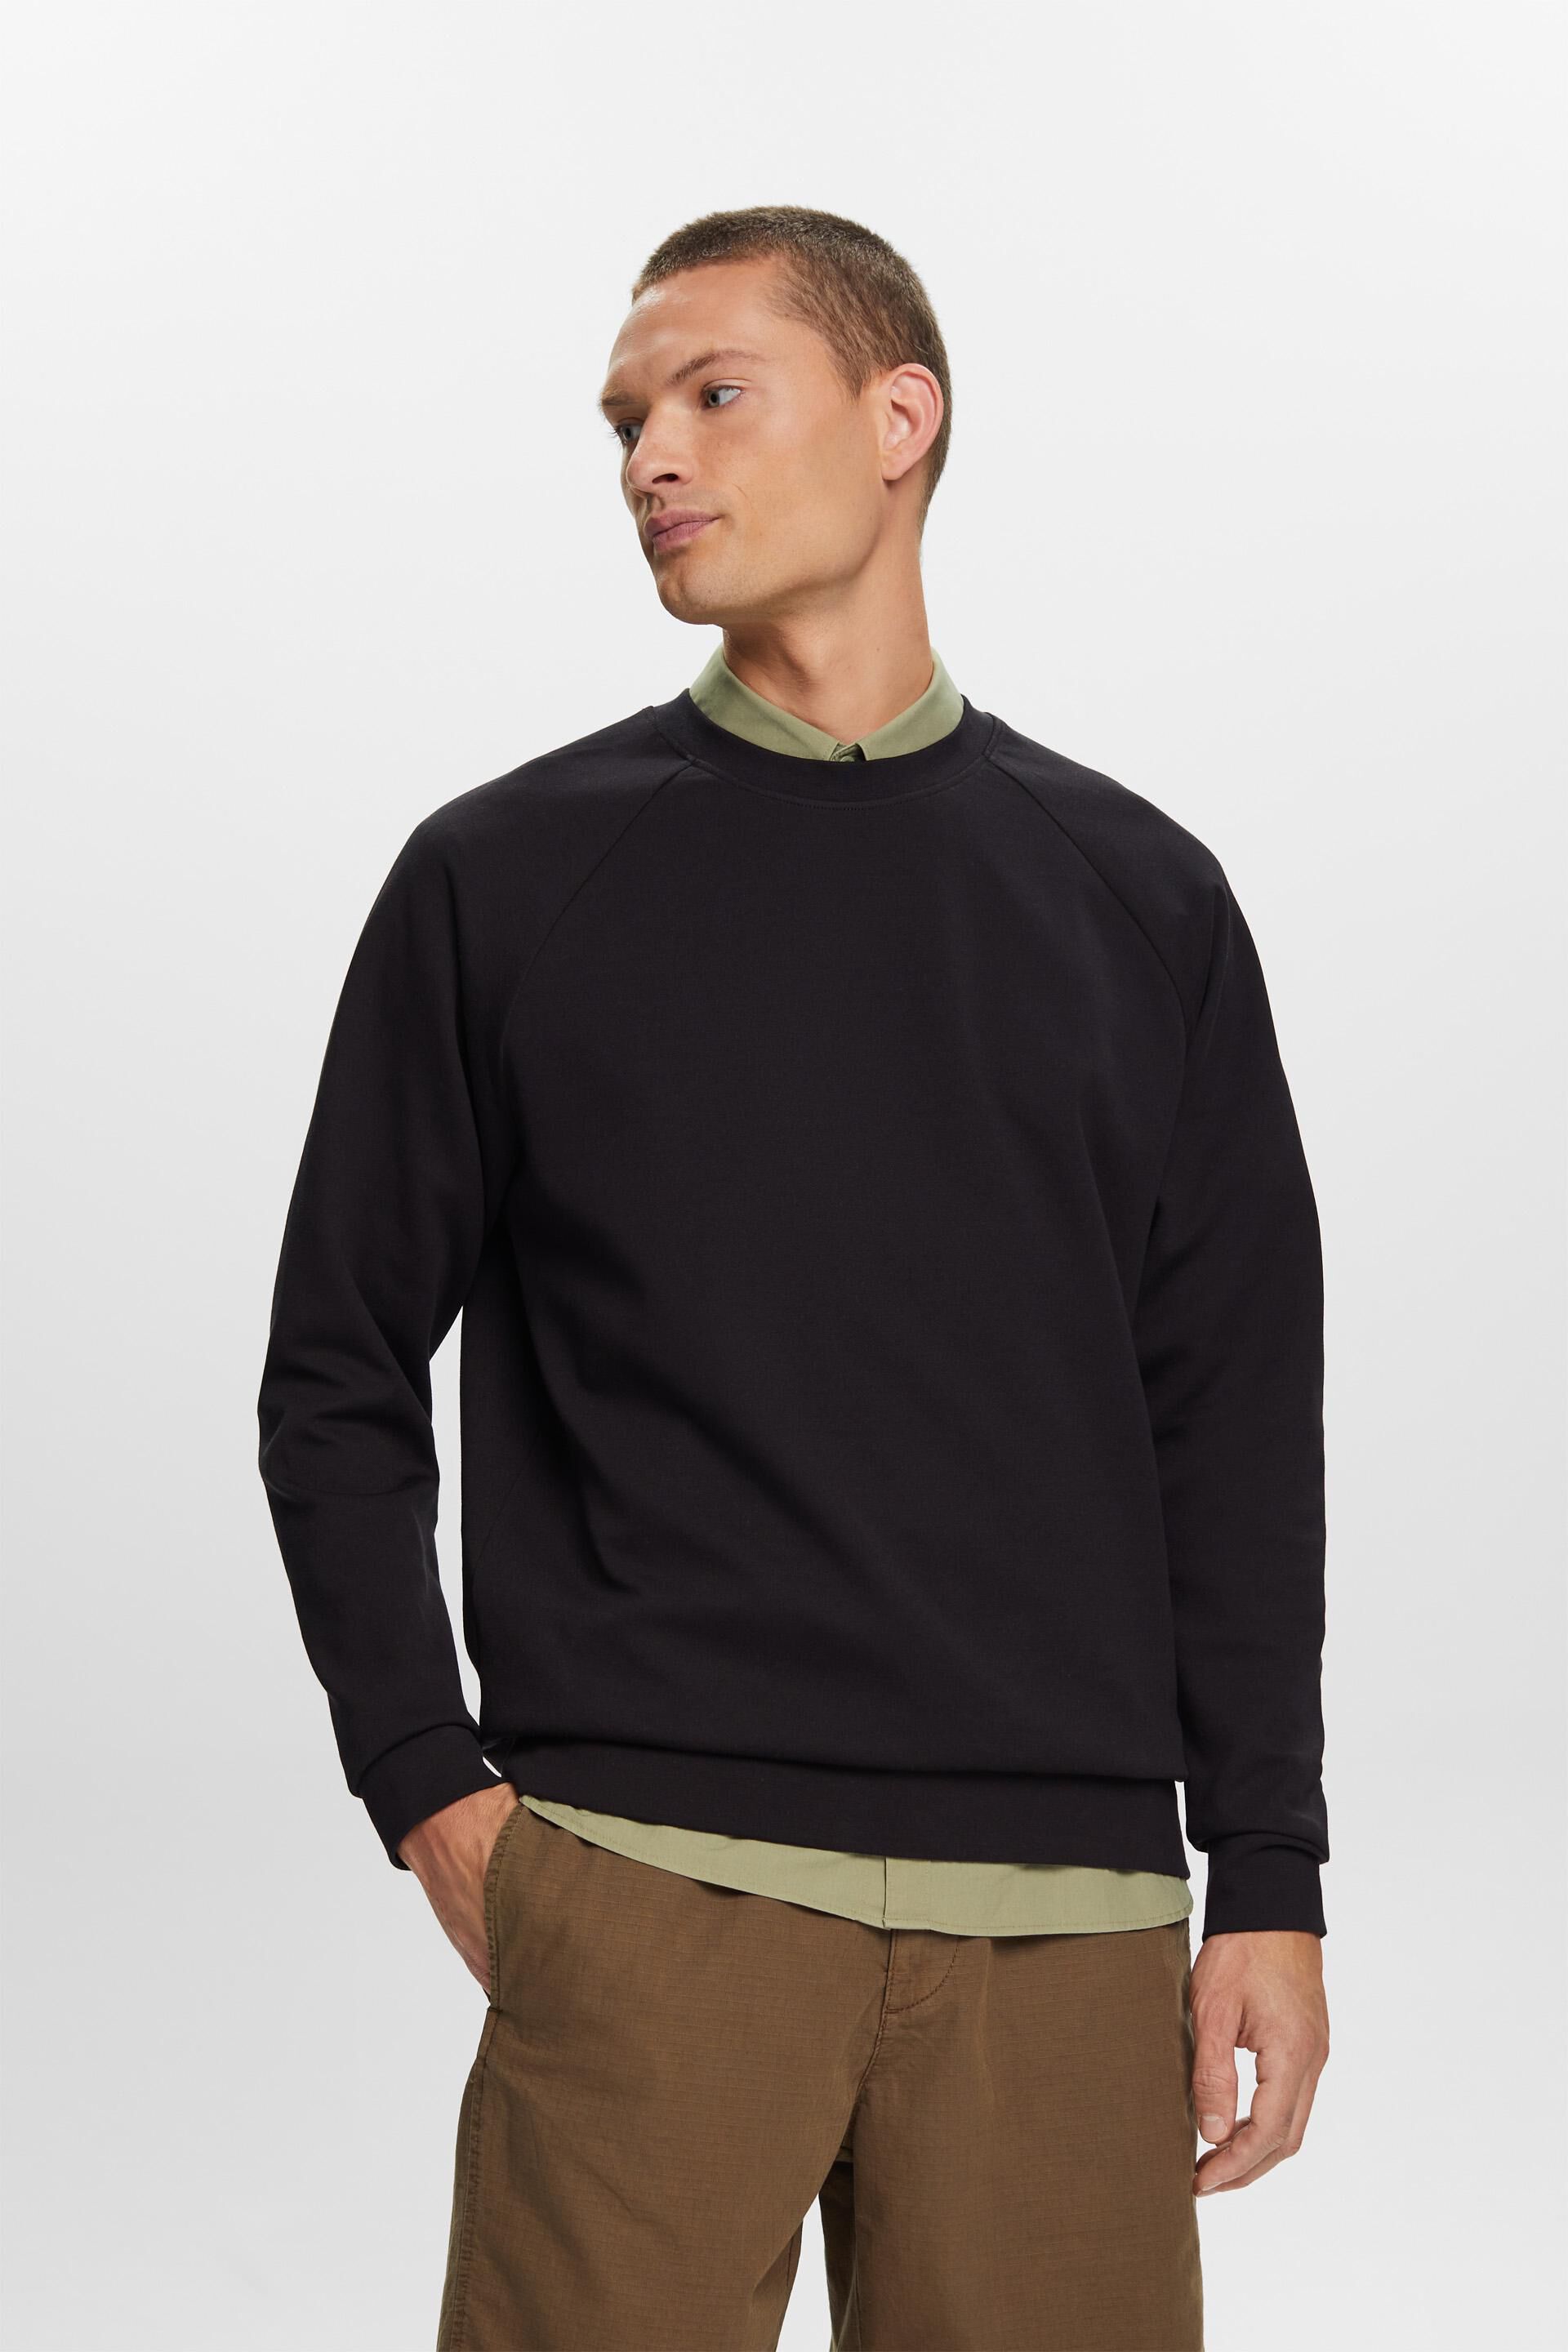 Esprit sweatshirt, cotton blend Basic